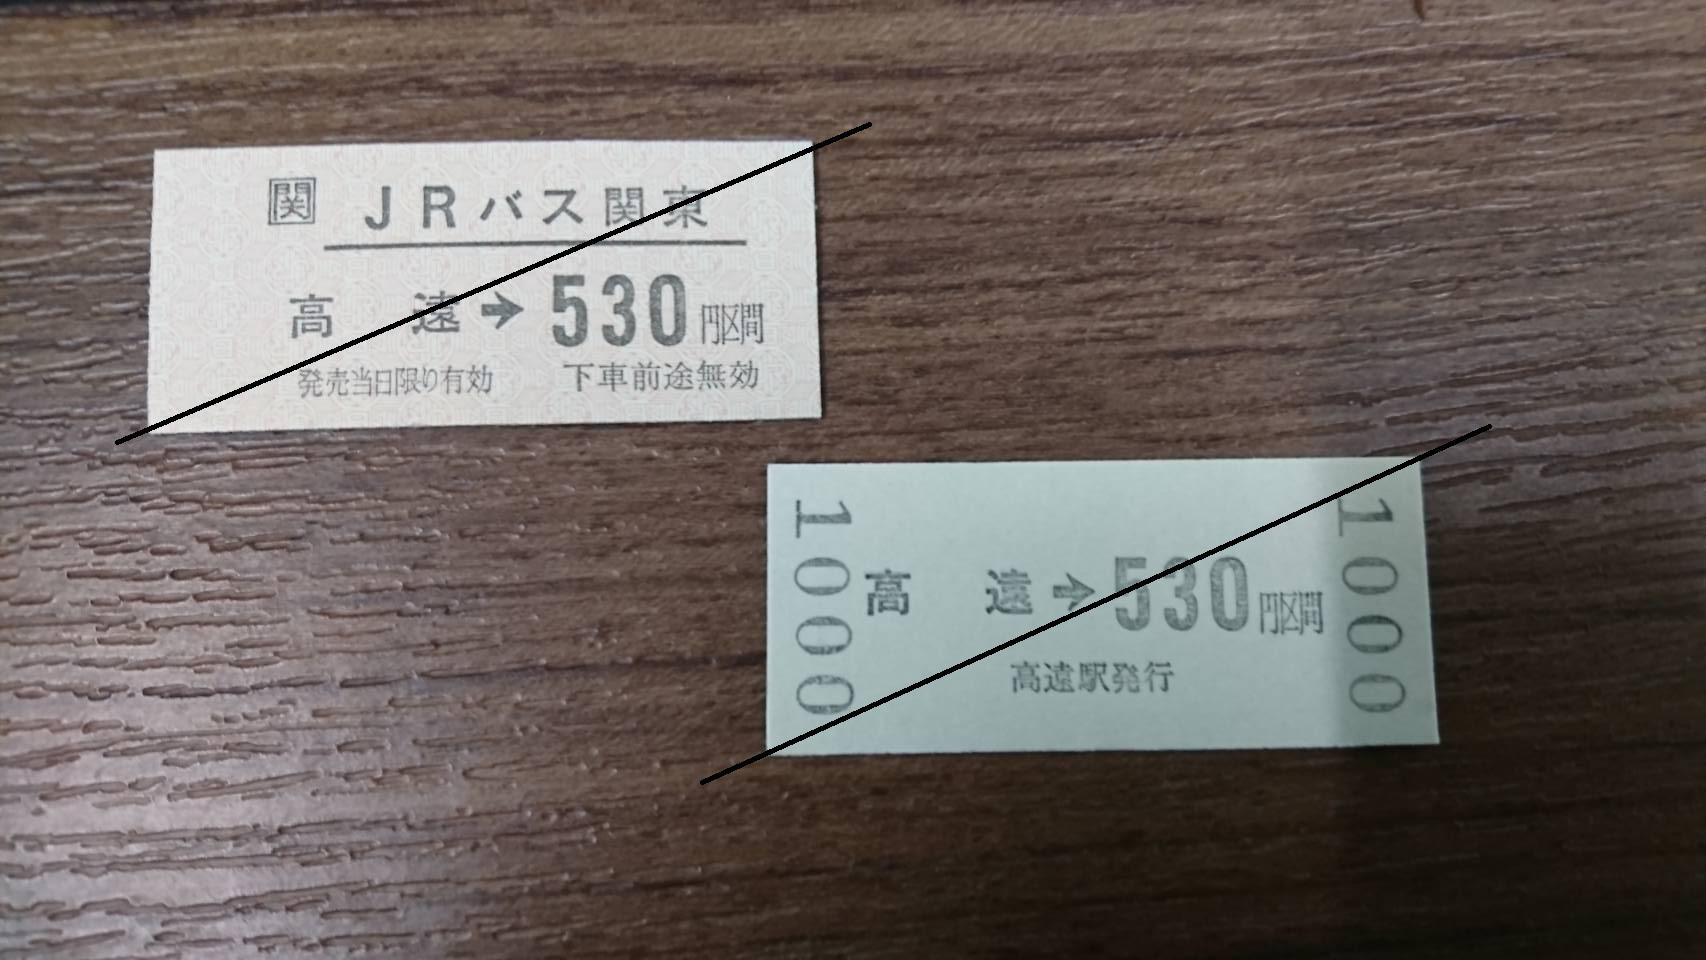 ticket_takato1.jpg